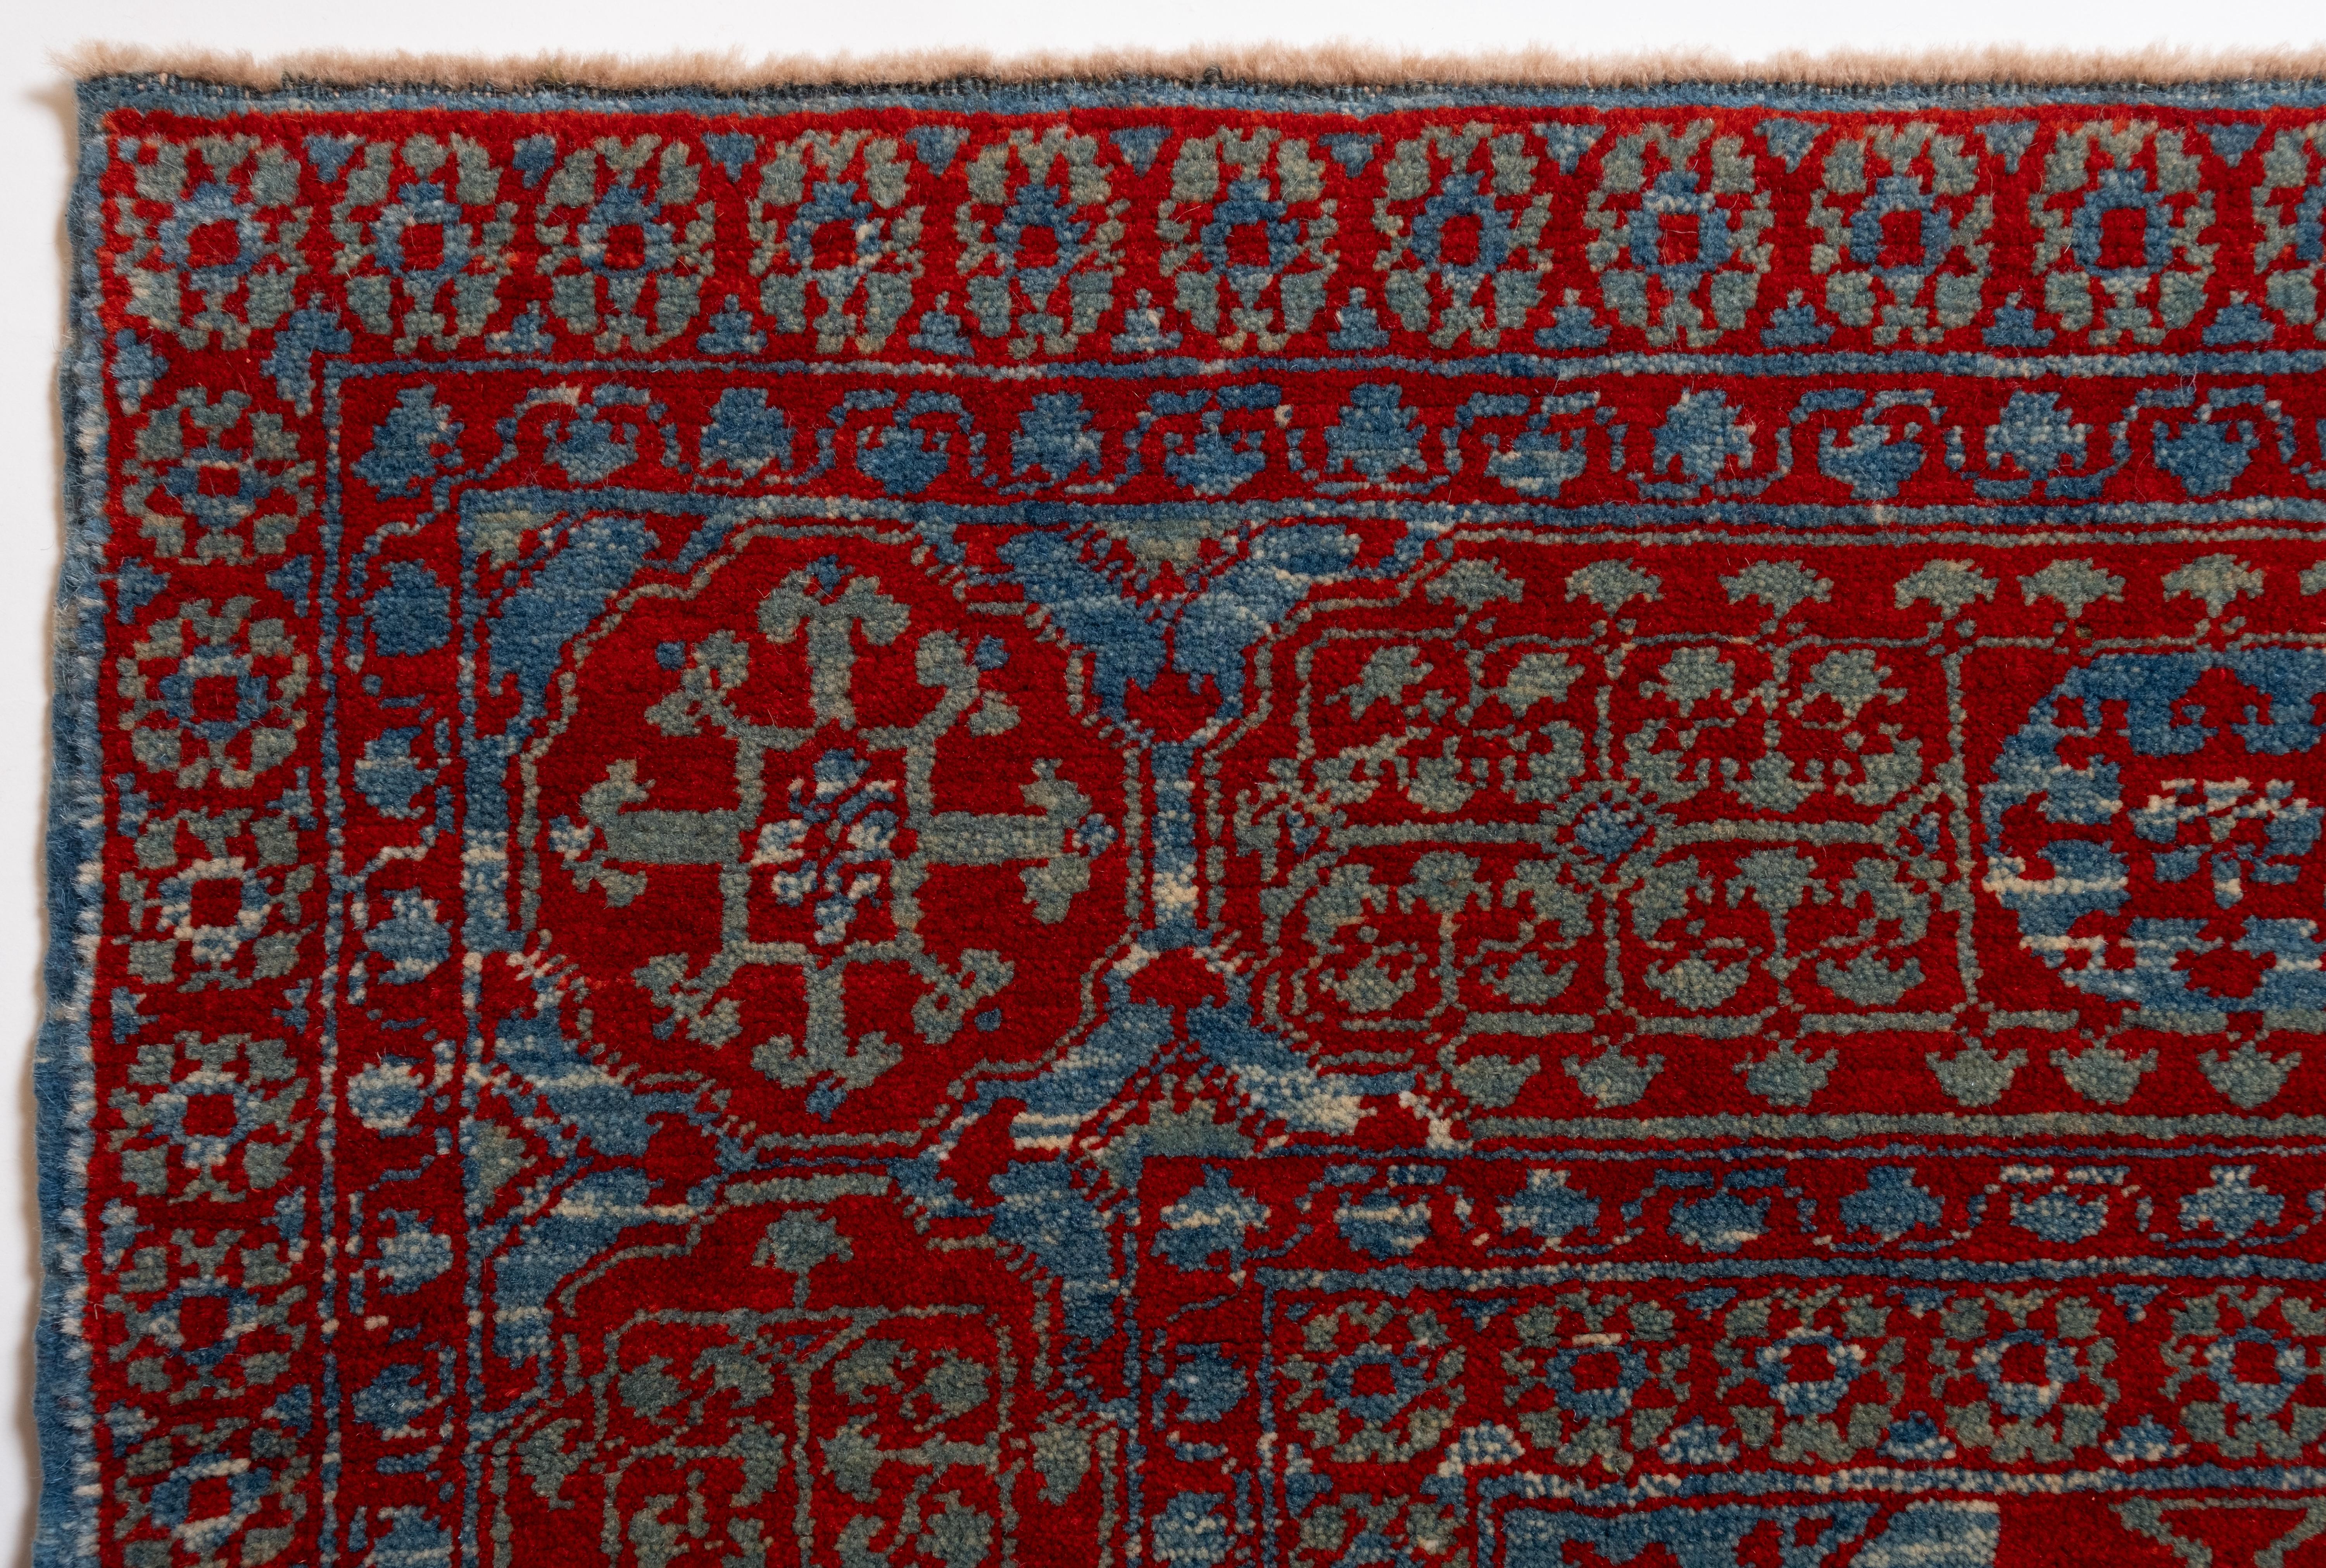 Dieser Teppich mit dem zentralen Stern wurde im frühen 16. Jahrhundert von Mamluken-Sultanen in Kairo, Ägypten, entworfen. Der Versuch, frühe Teppiche zu lesen, die in Kairoer Werkstätten hergestellt wurden, stellt eine ganz andere Herausforderung